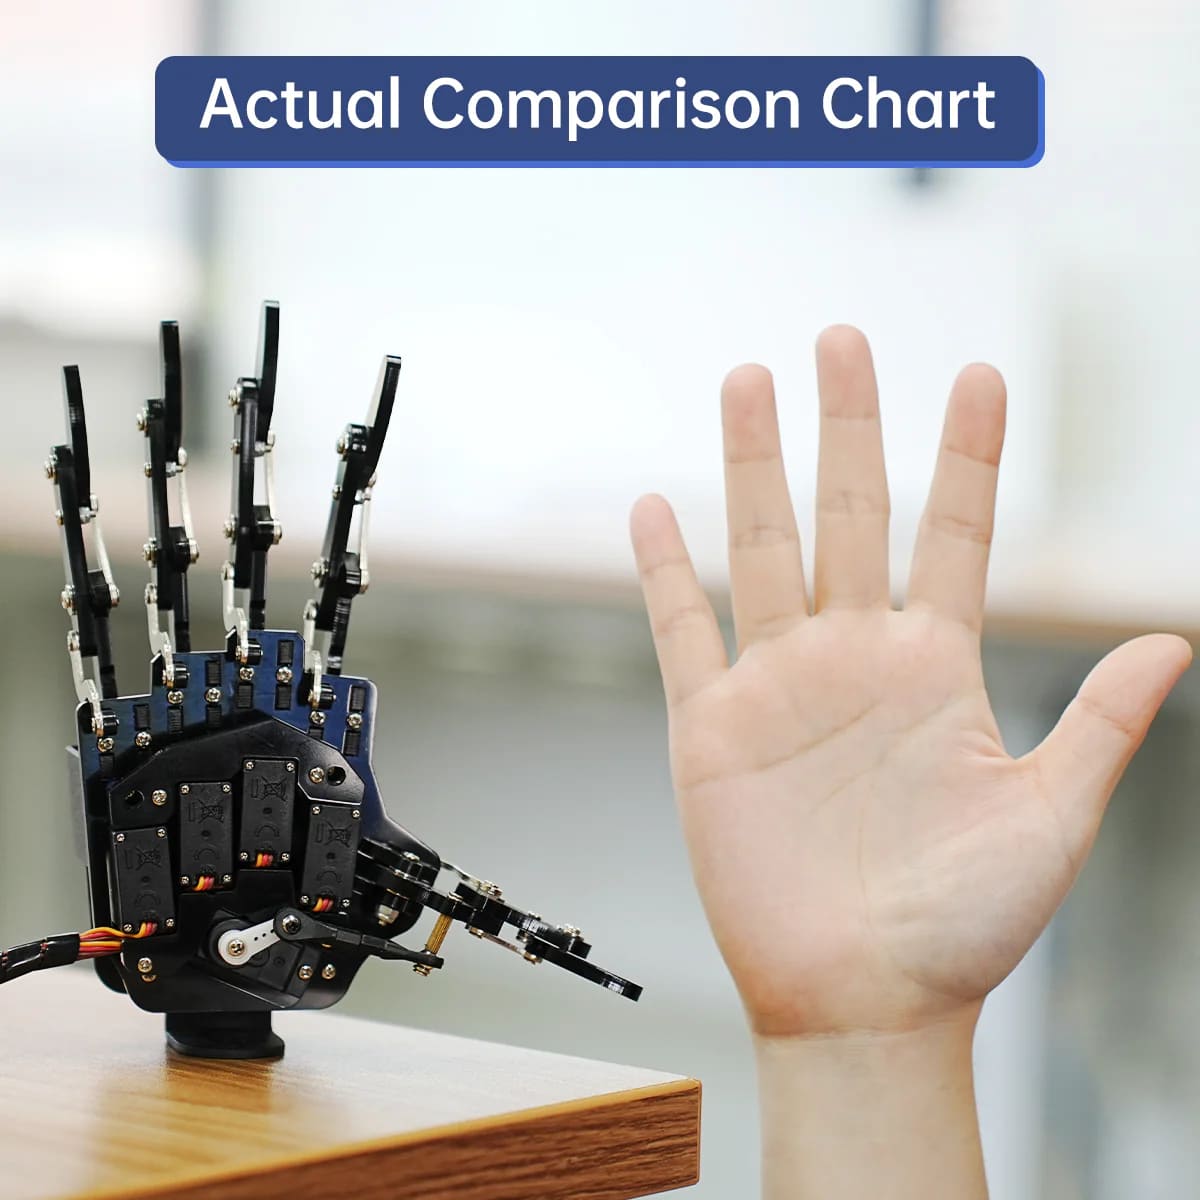 uHand: Hiwonder Robotic Hand Fingers Move Individually for Robot DIY (Bàn tay robot ngón tay di chuyển độc lập cho robot DIY)